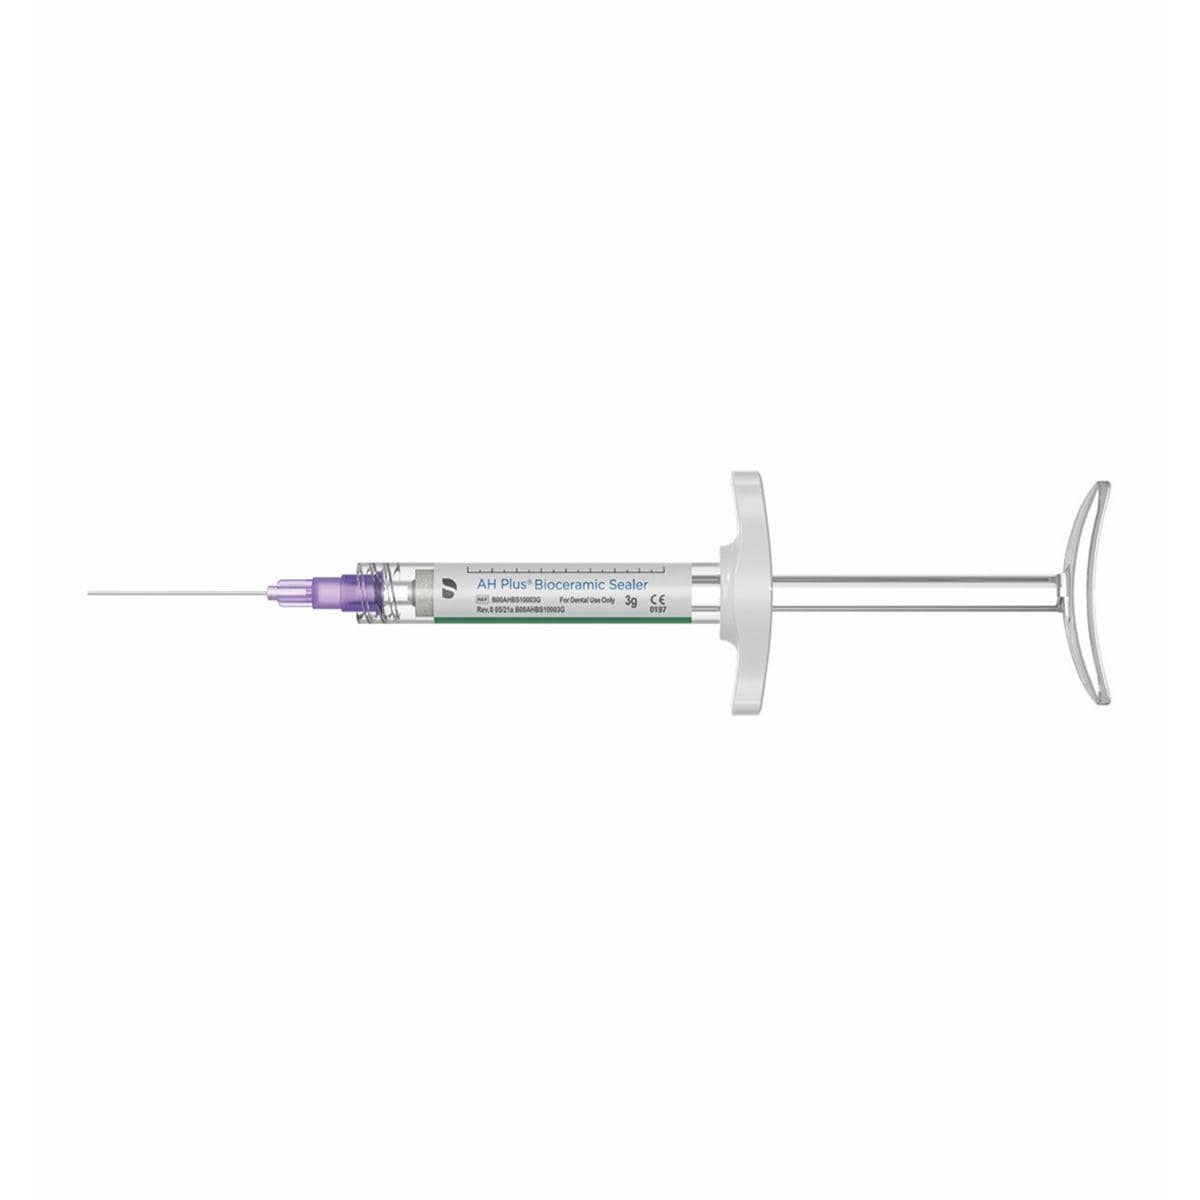 AH Plus Bioceramic Sealer Syringe Refill